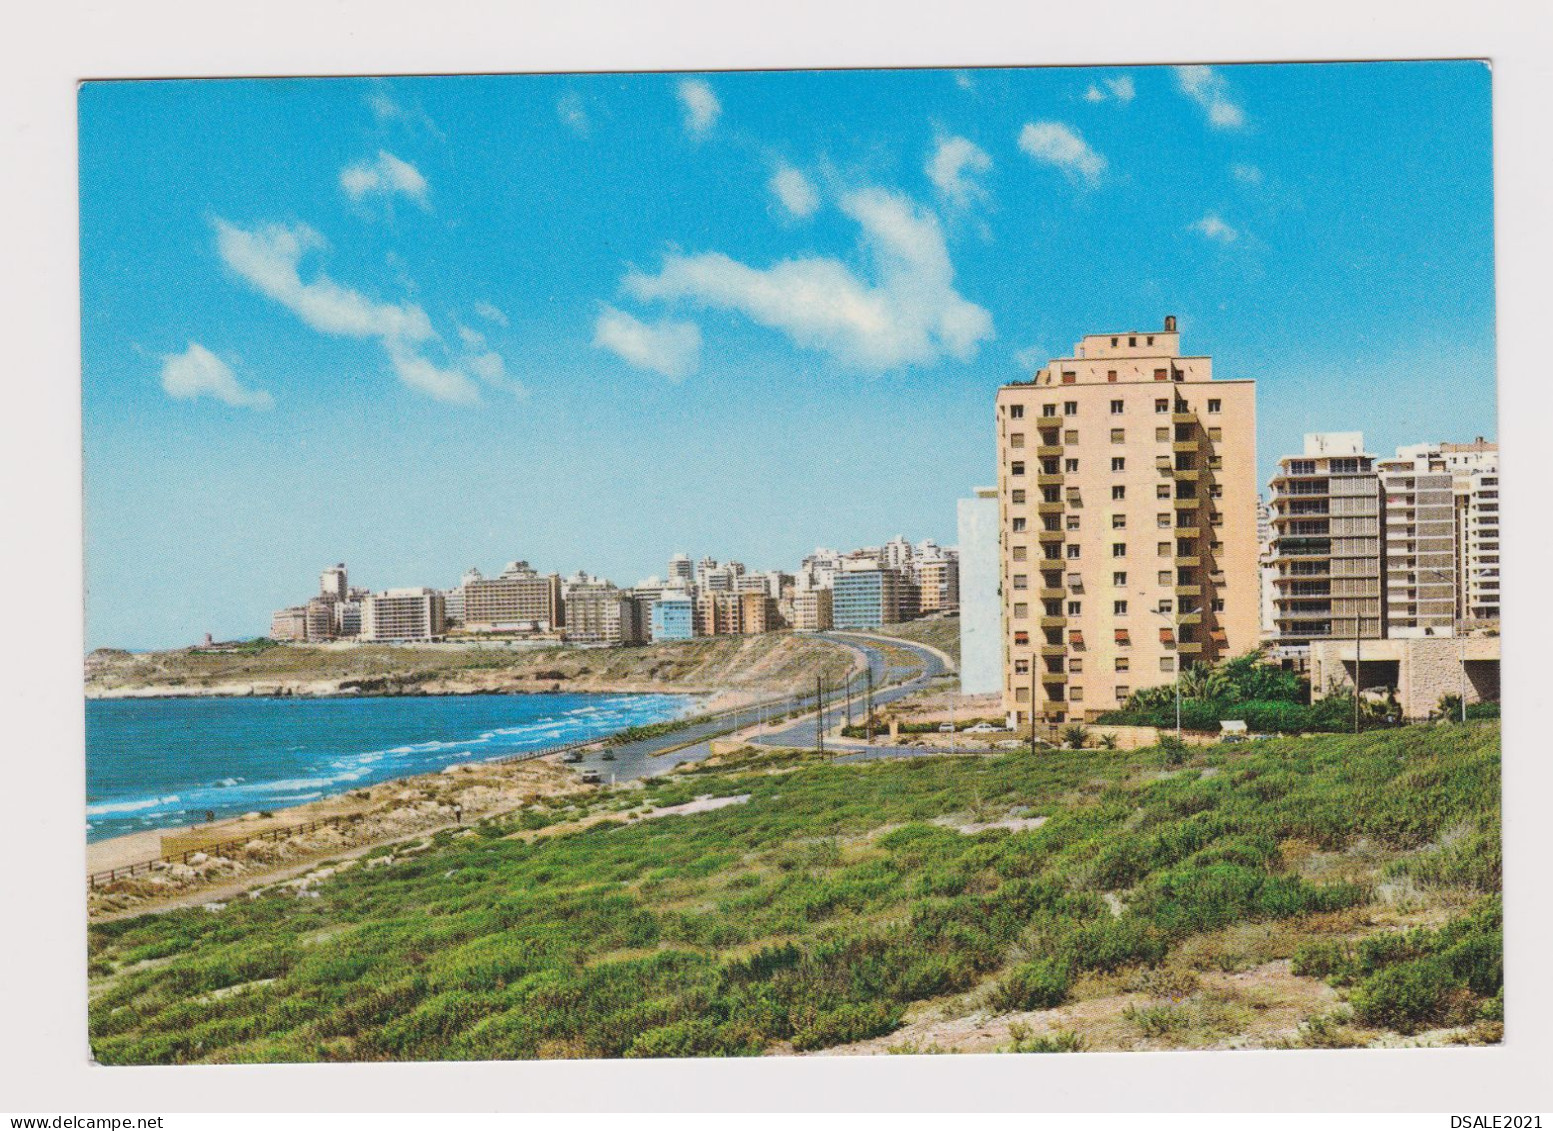 Lebanon Liban Raouche Quarter, New Buildings, View Vintage Photo Postcard RPPc AK (1295) - Líbano